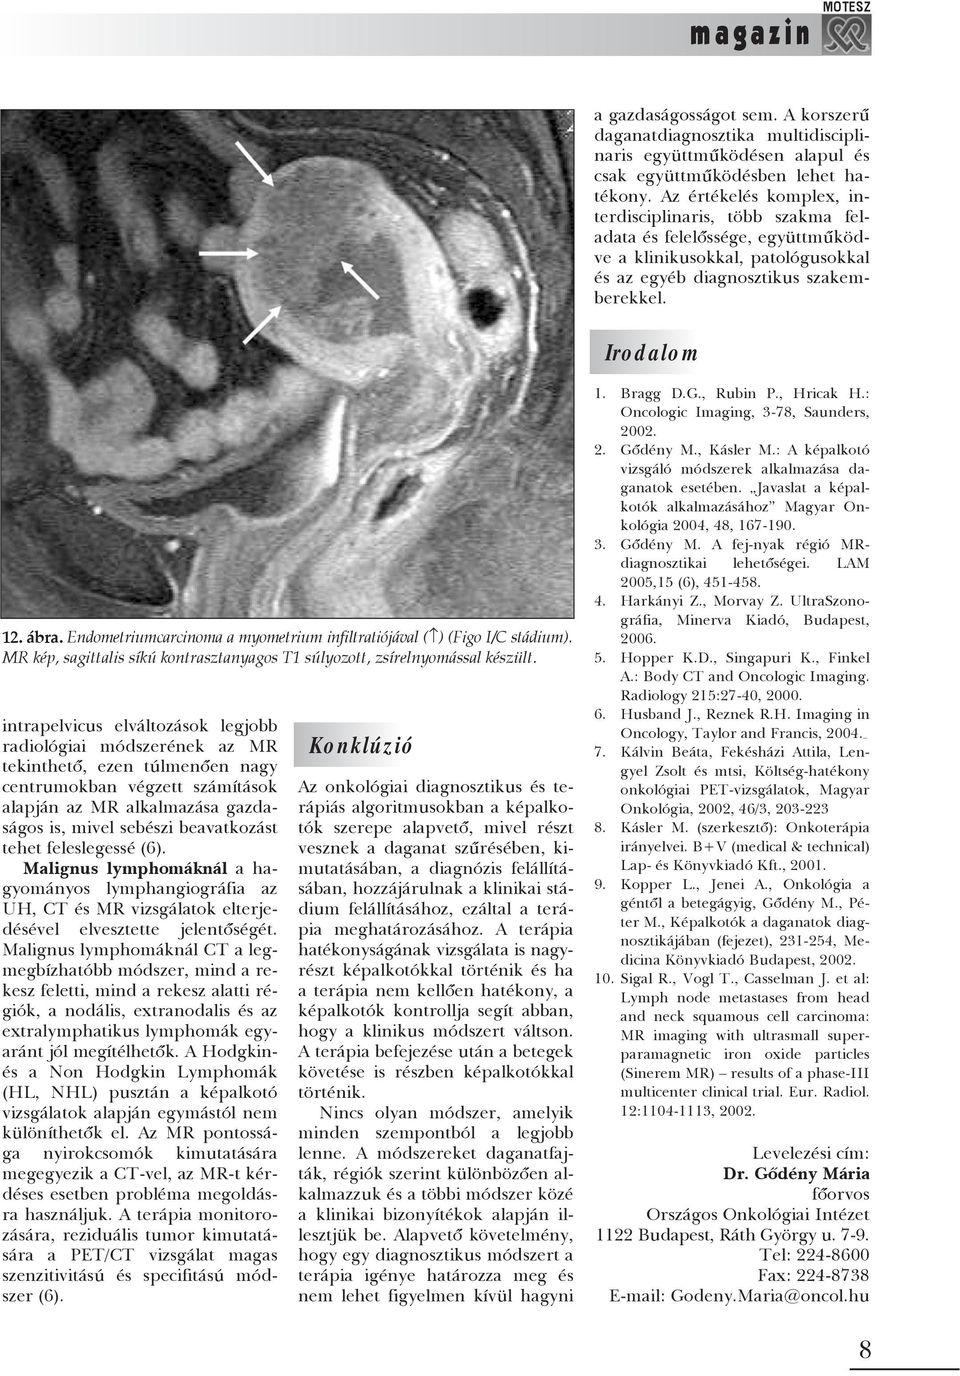 Endometriumcarcinoma a myometrium infiltratiójával ( ) (Figo I/C stádium). MR kép, sagittalis síkú kontrasztanyagos T1 súlyozott, zsírelnyomással készült.